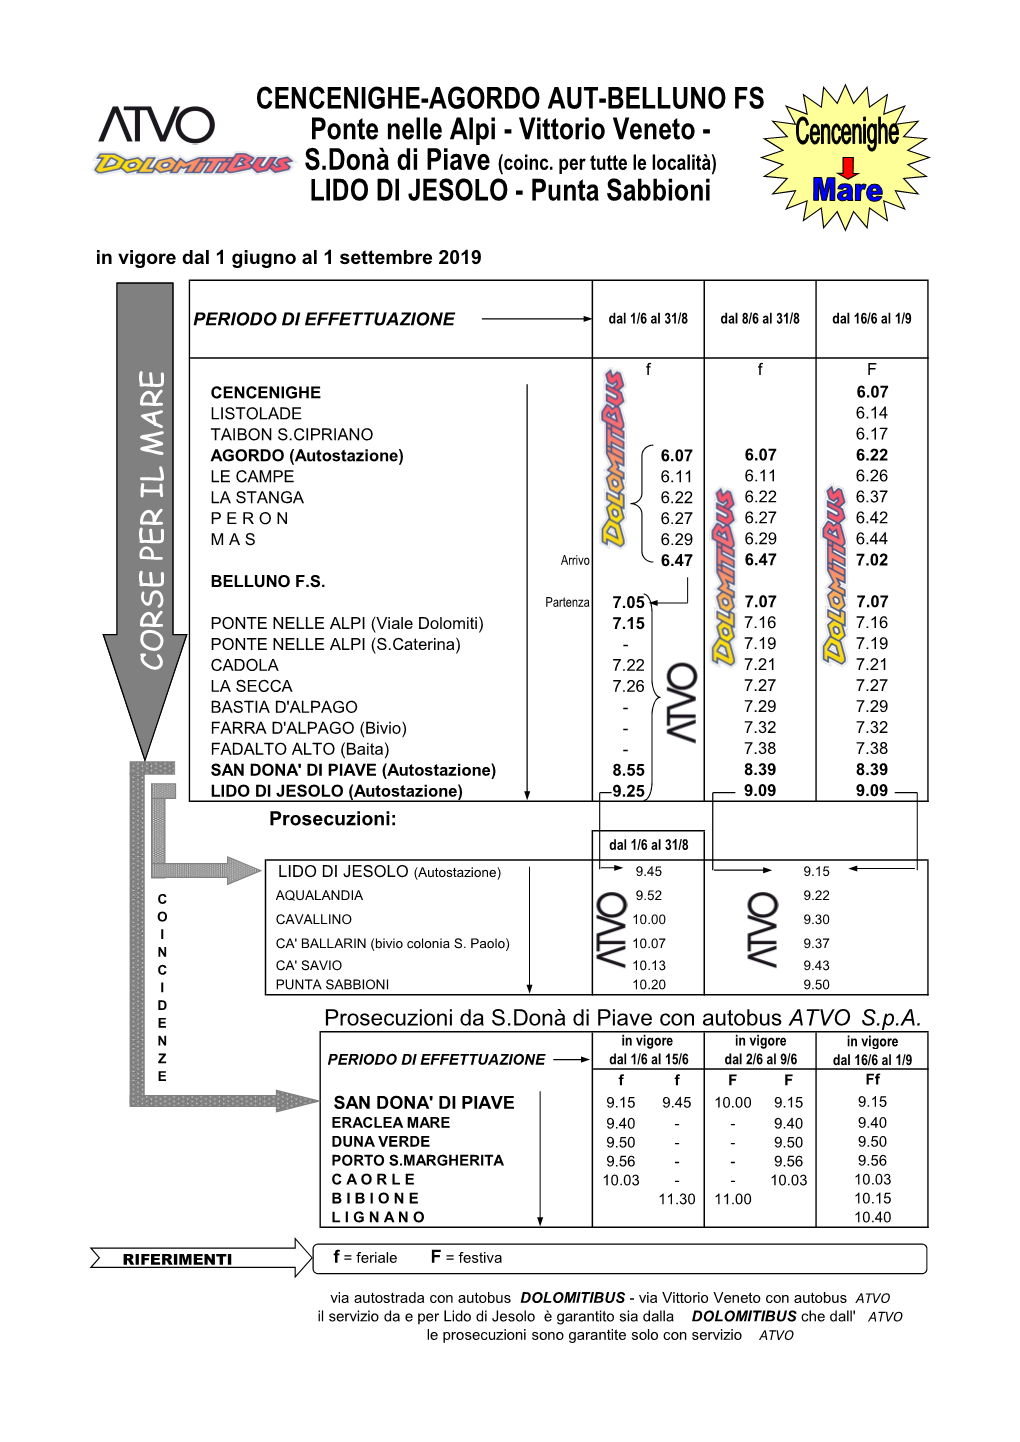 CENCENIGHE-AGORDO AUT-BELLUNO FS Ponte Nelle Alpi - Vittorio Veneto - S.Donà Di Piave (Coinc